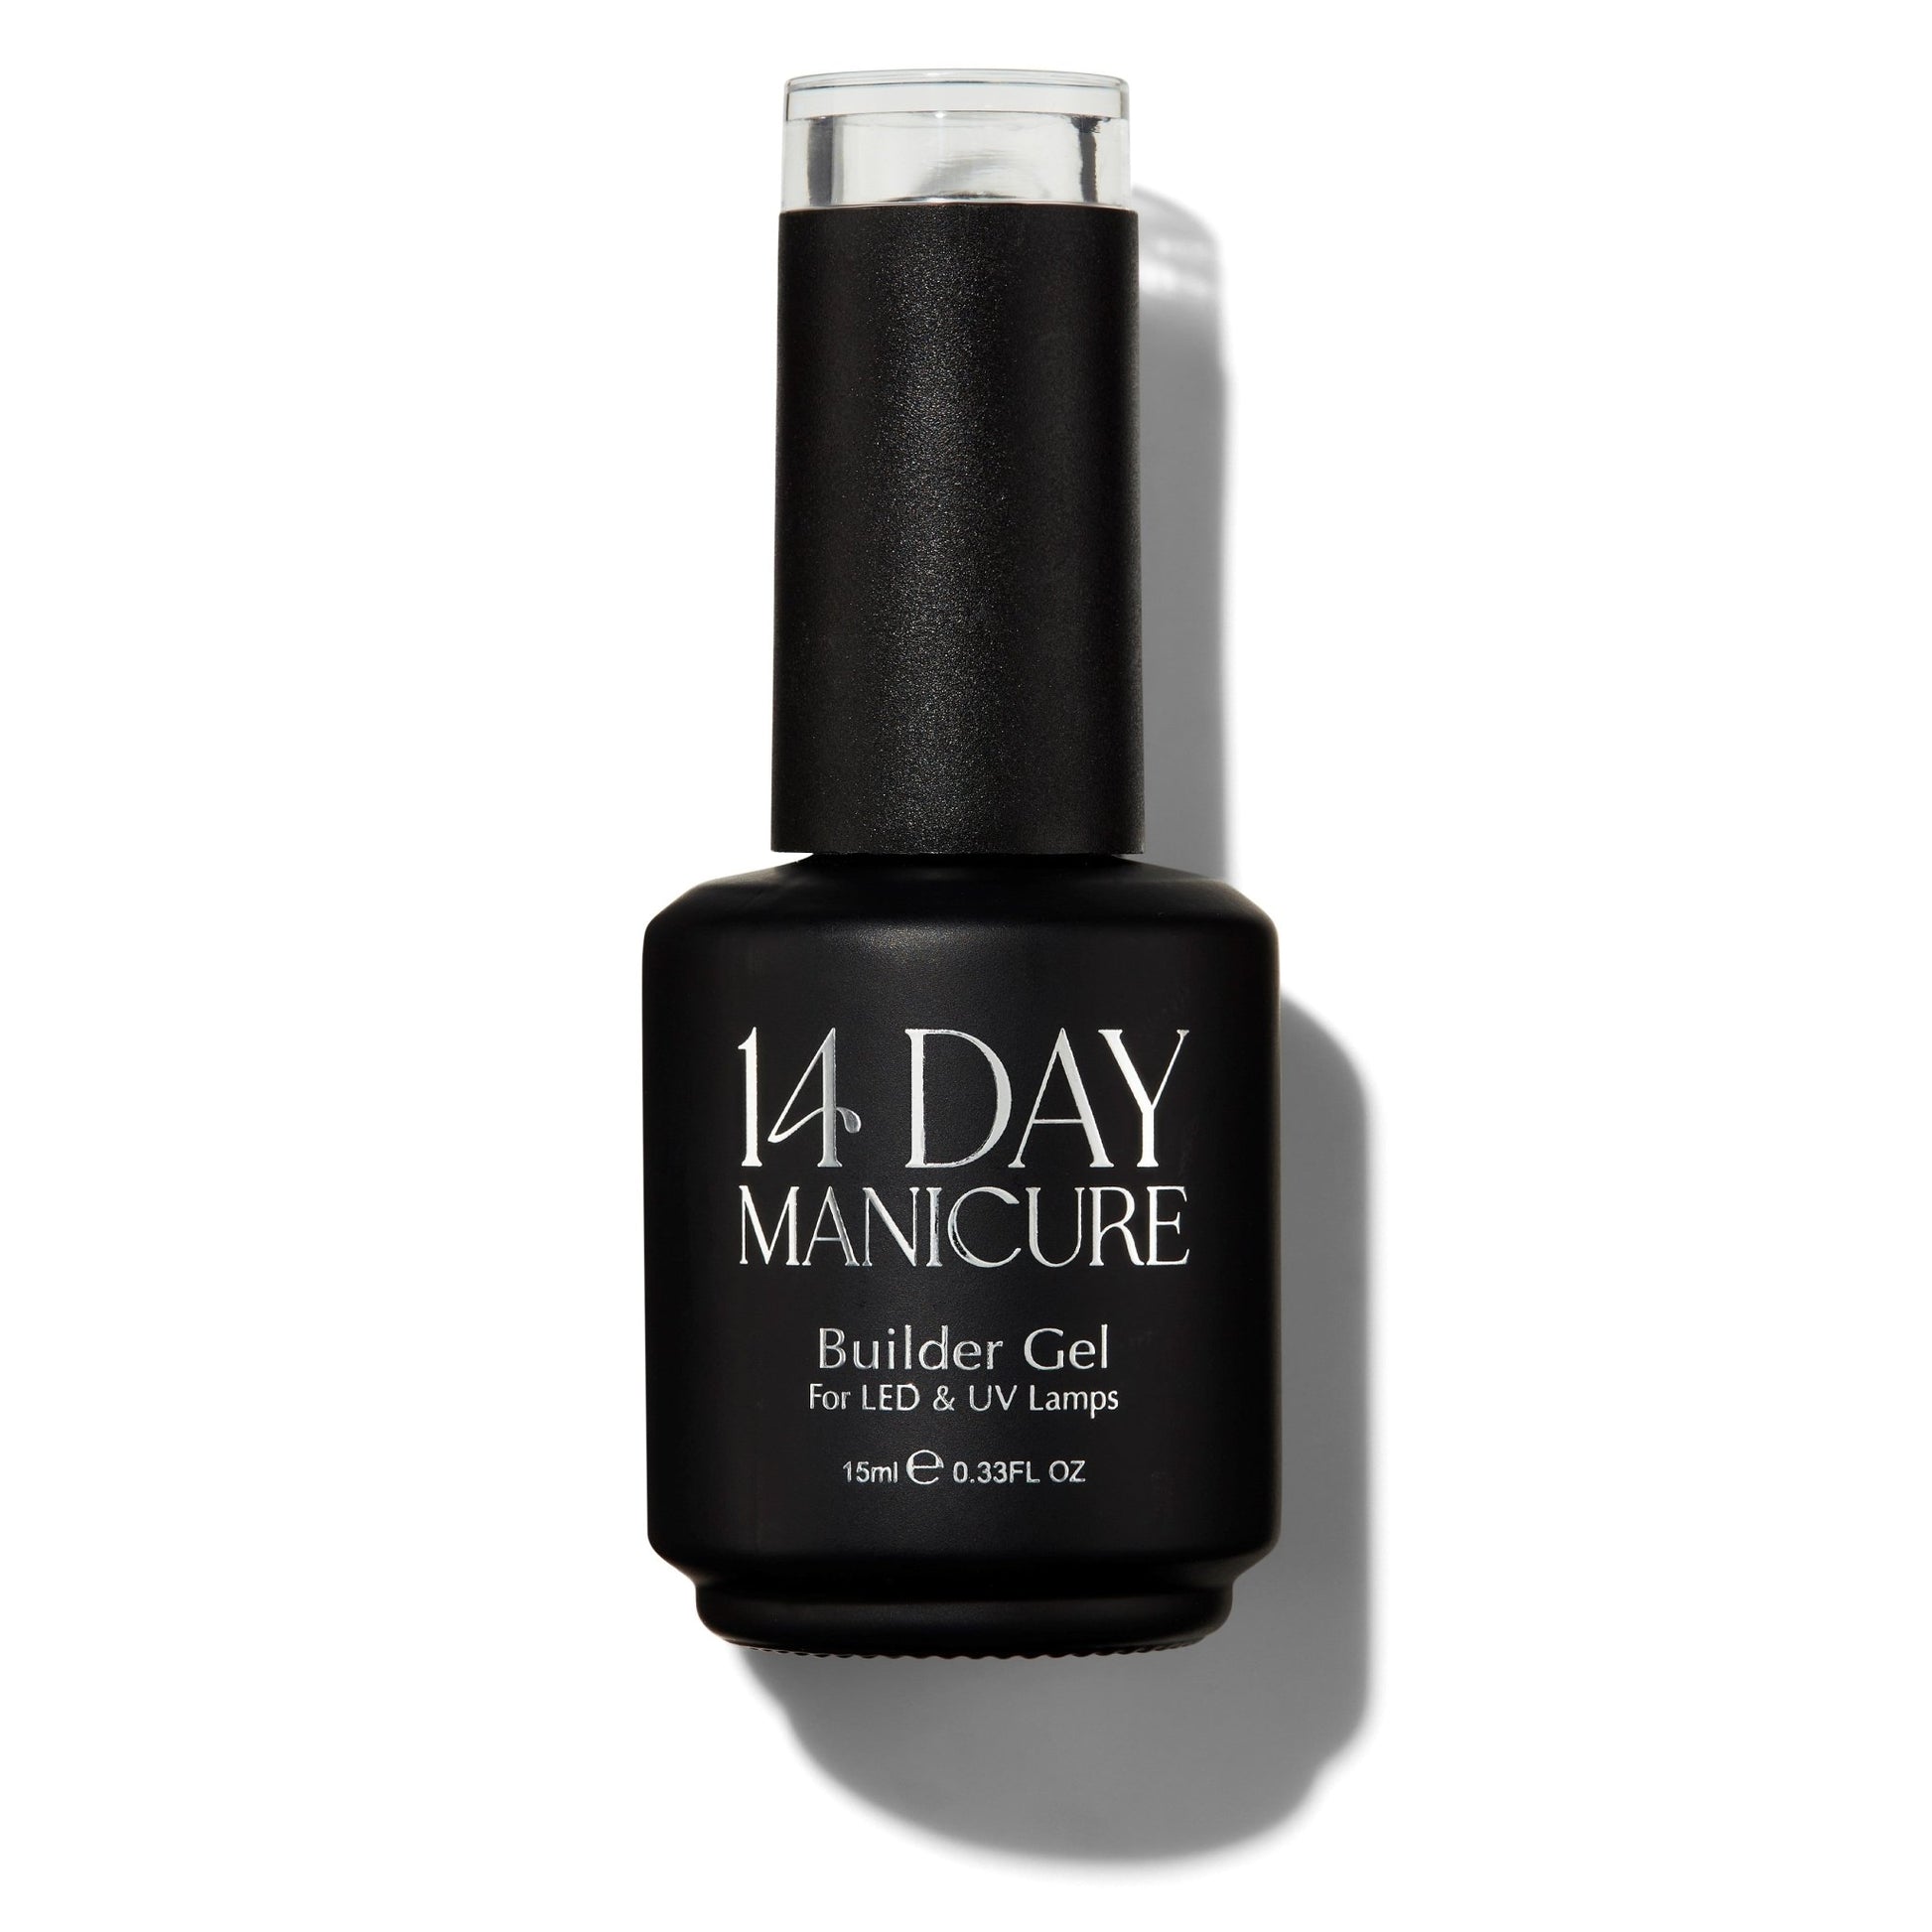 Peachy Keen - Builder Gel Bottle 15ML - 14 Day Manicure - 3